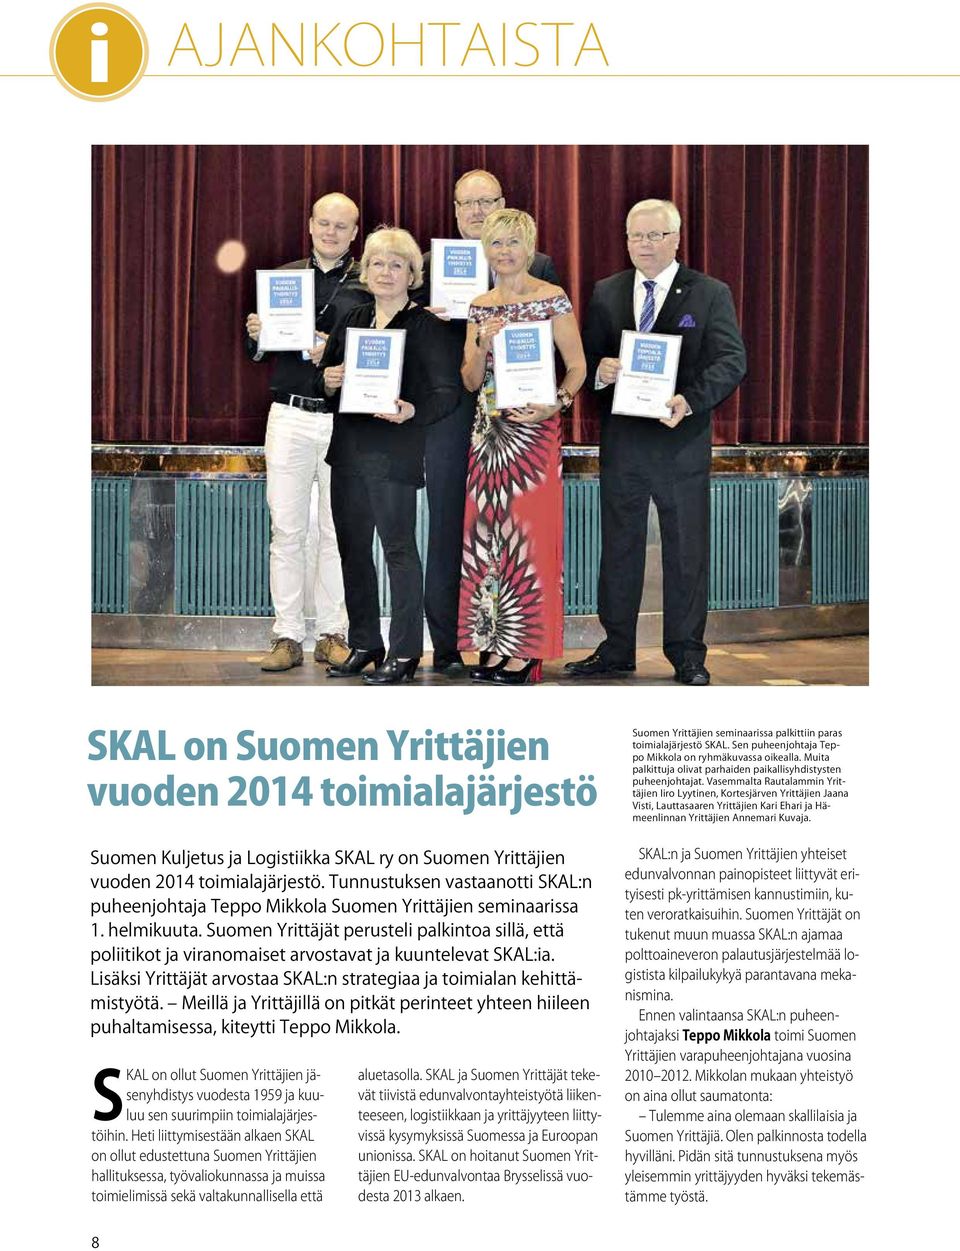 Suomen Yrittäjät perusteli palkintoa sillä, että poliitikot ja viranomaiset arvostavat ja kuuntelevat SKAL:ia. Lisäksi Yrittäjät arvostaa SKAL:n strategiaa ja toimialan kehittämistyötä.